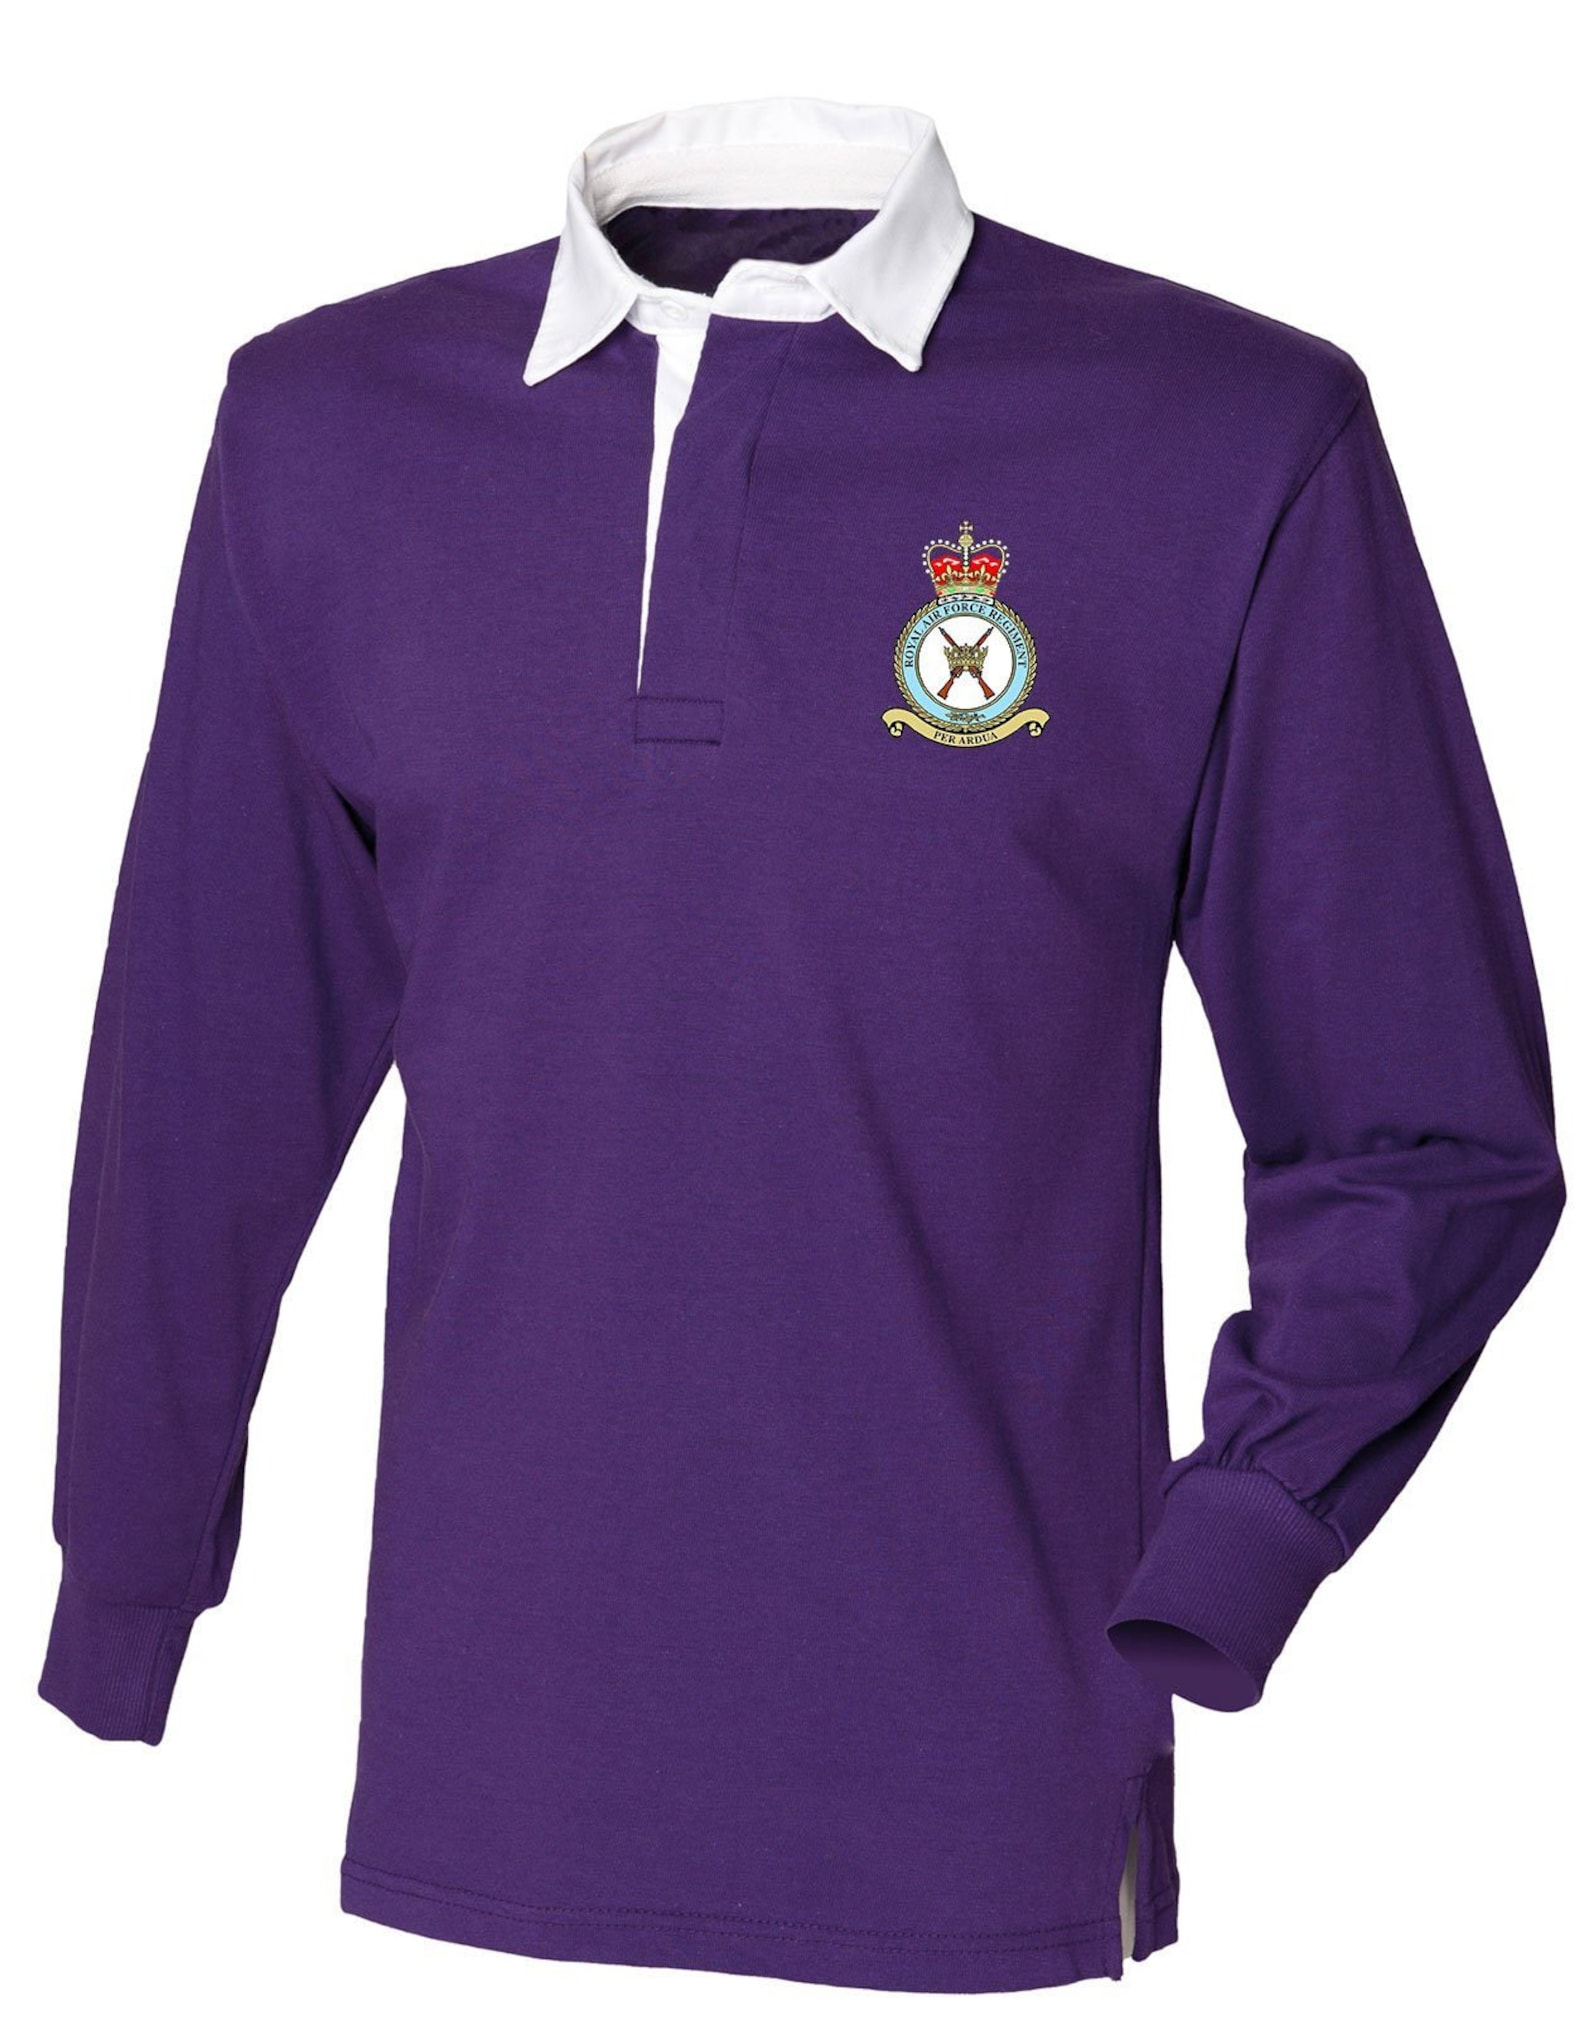 RAF REGIMENT Rugby Shirt - Etsy